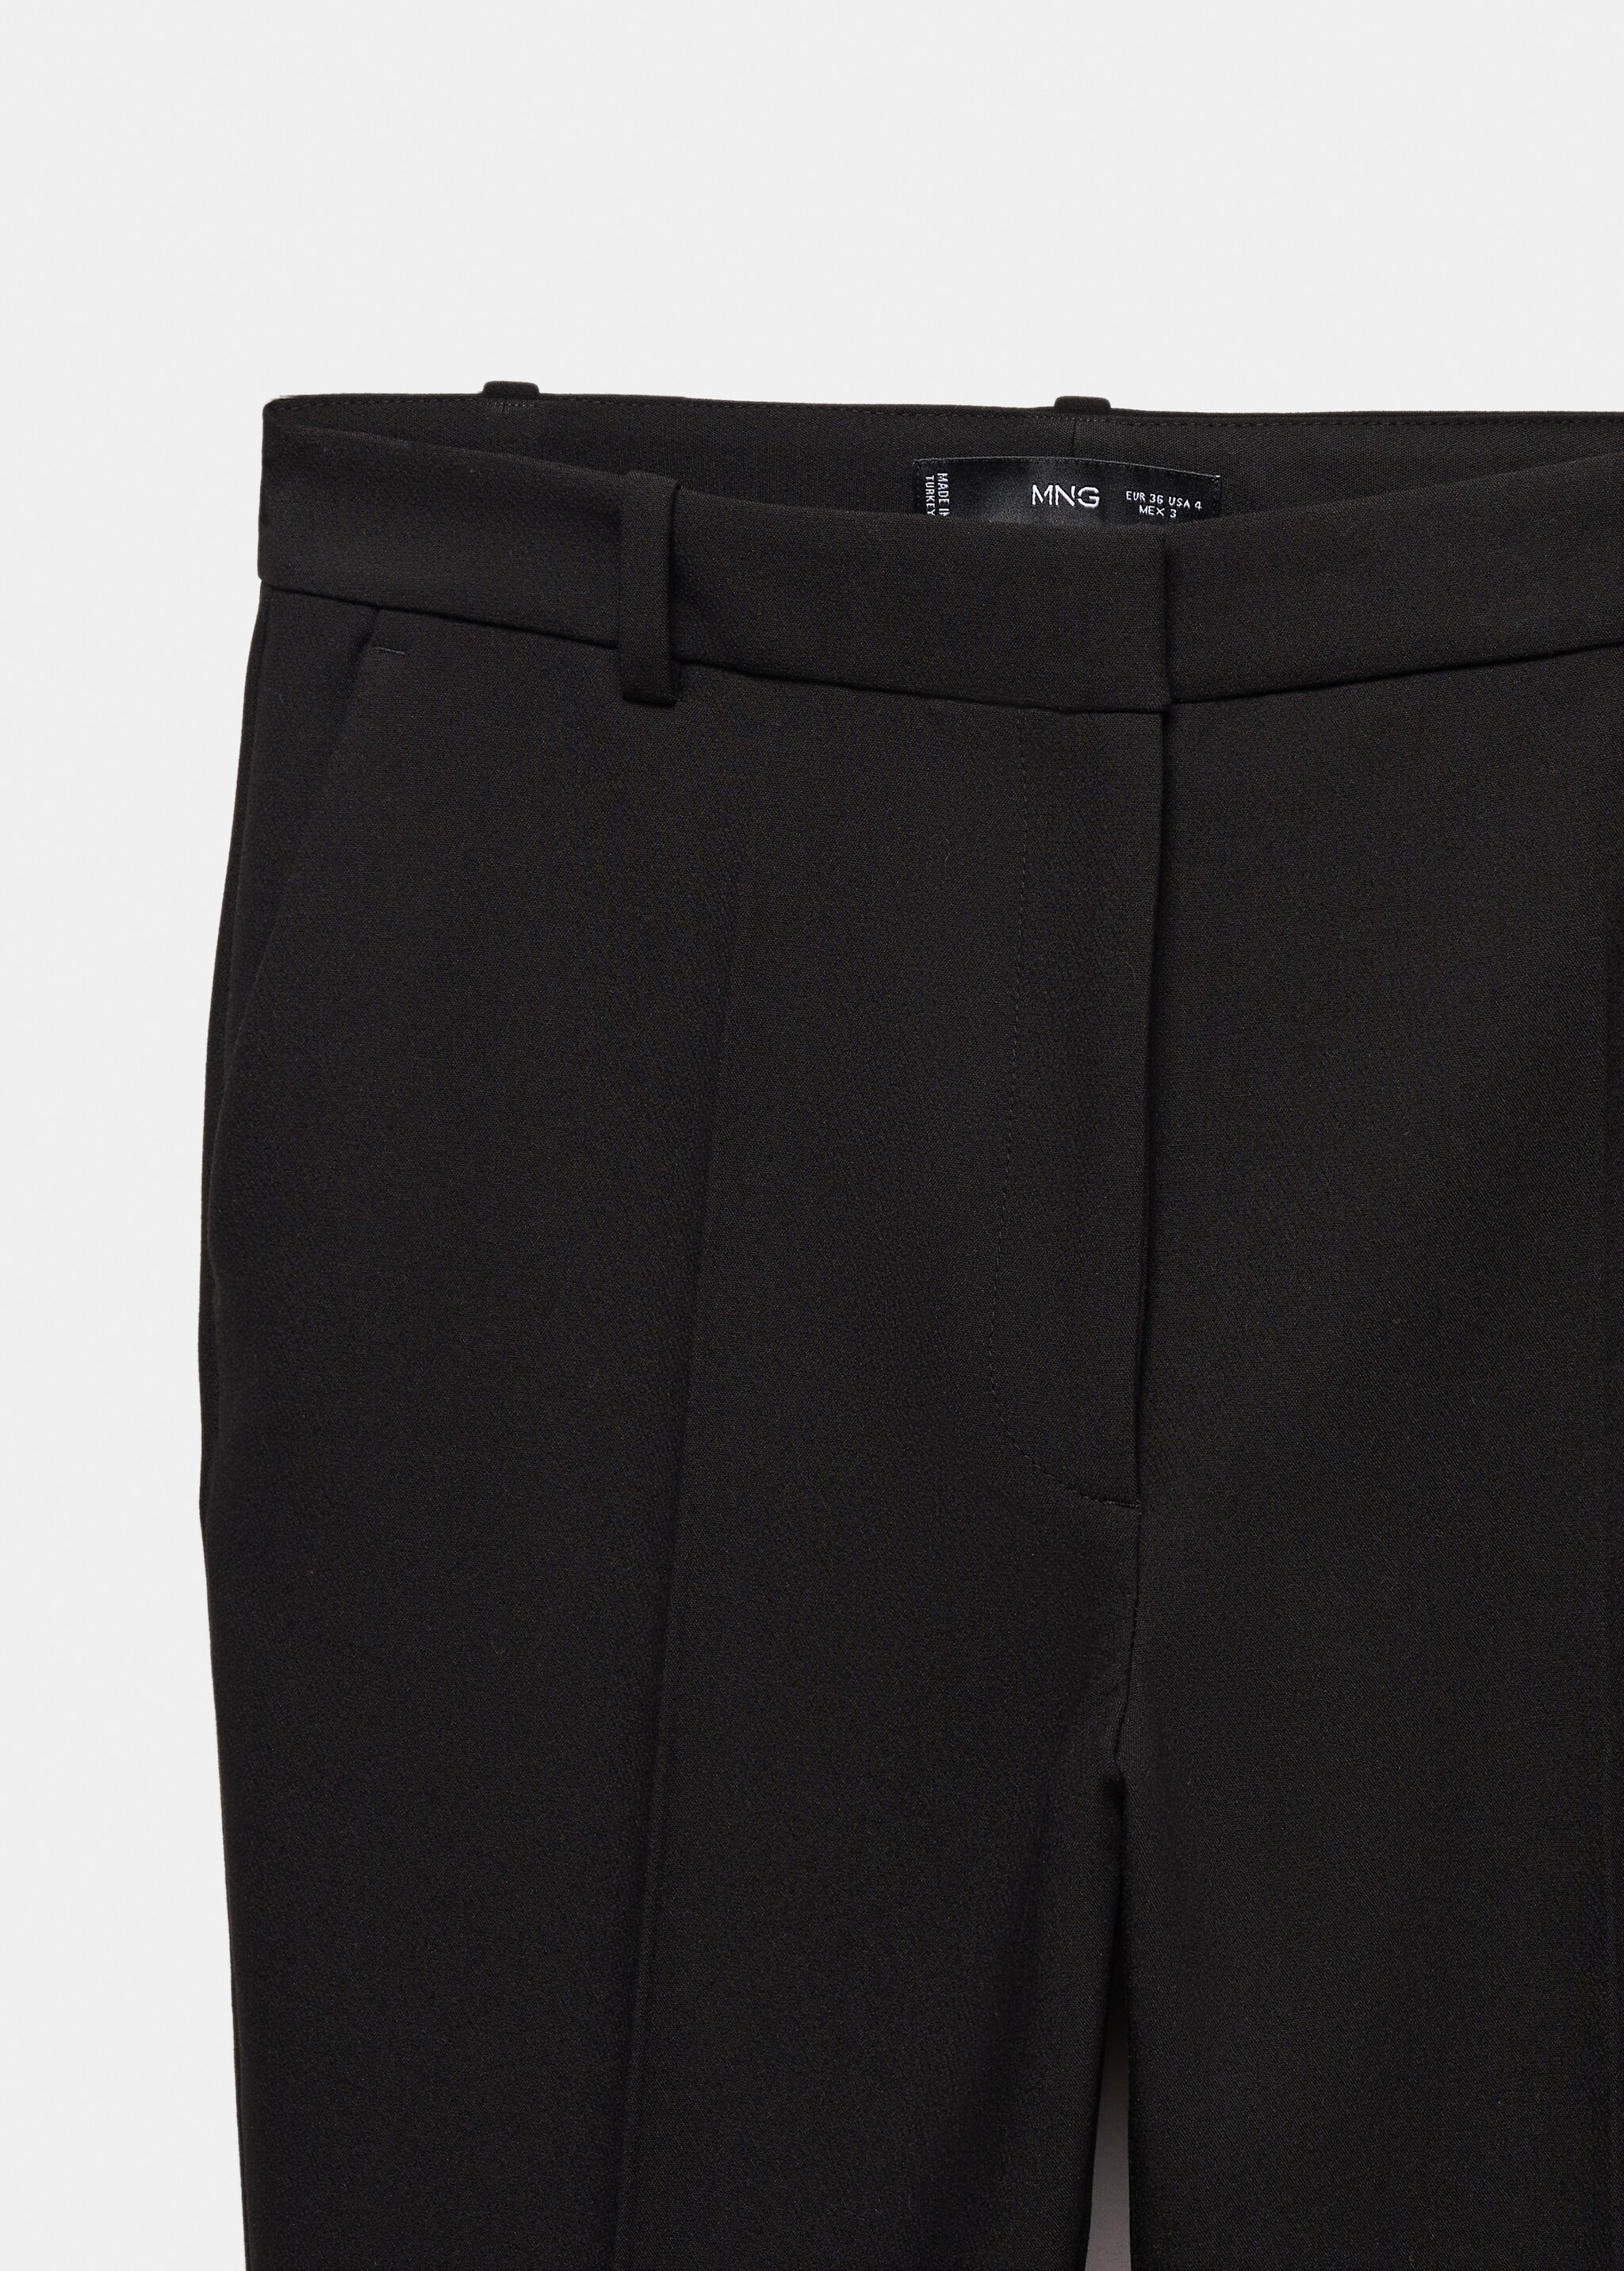 Orta belli wideleg pantolon - Ürün detayı 8